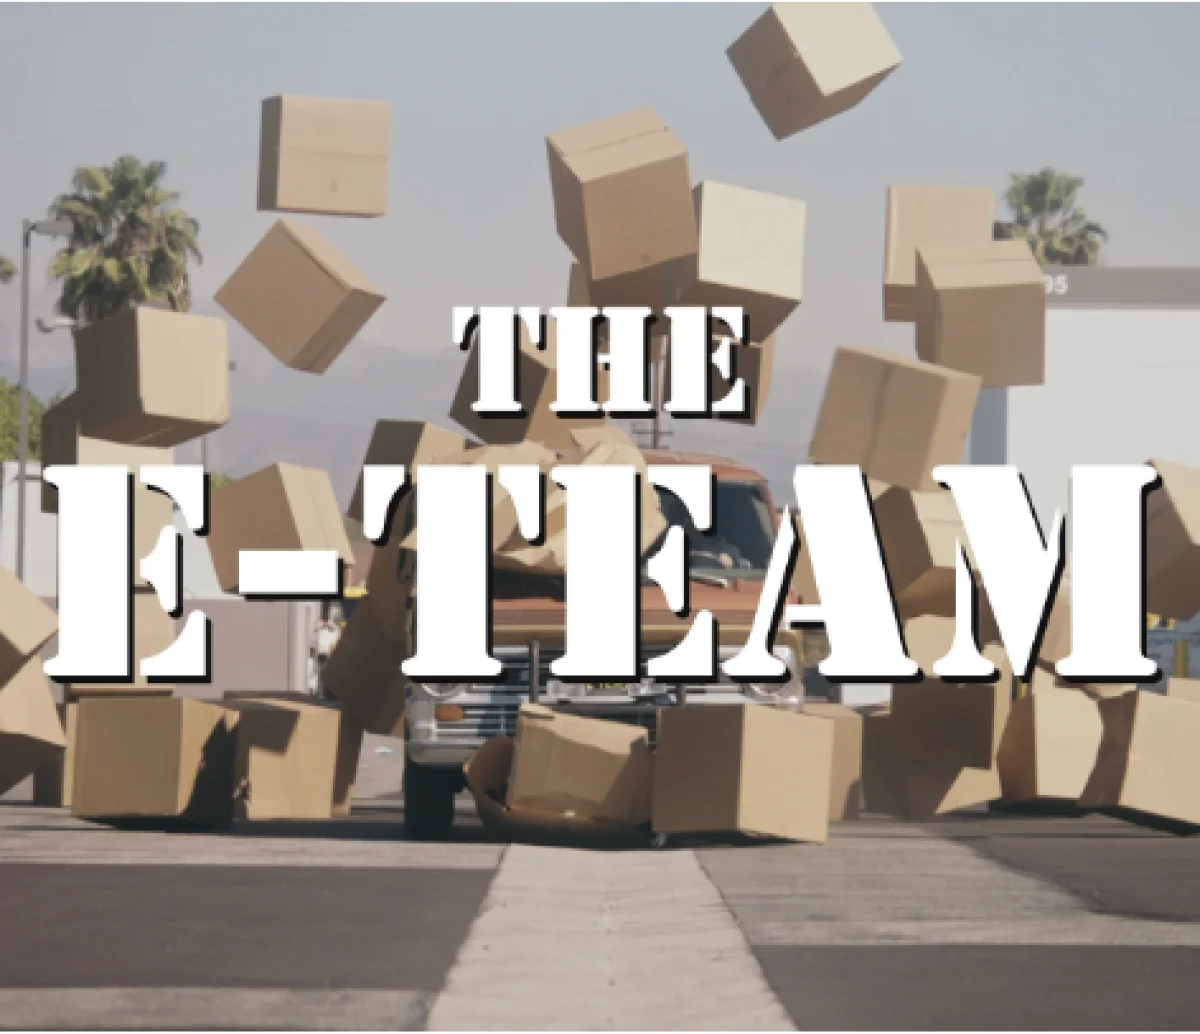 The e team